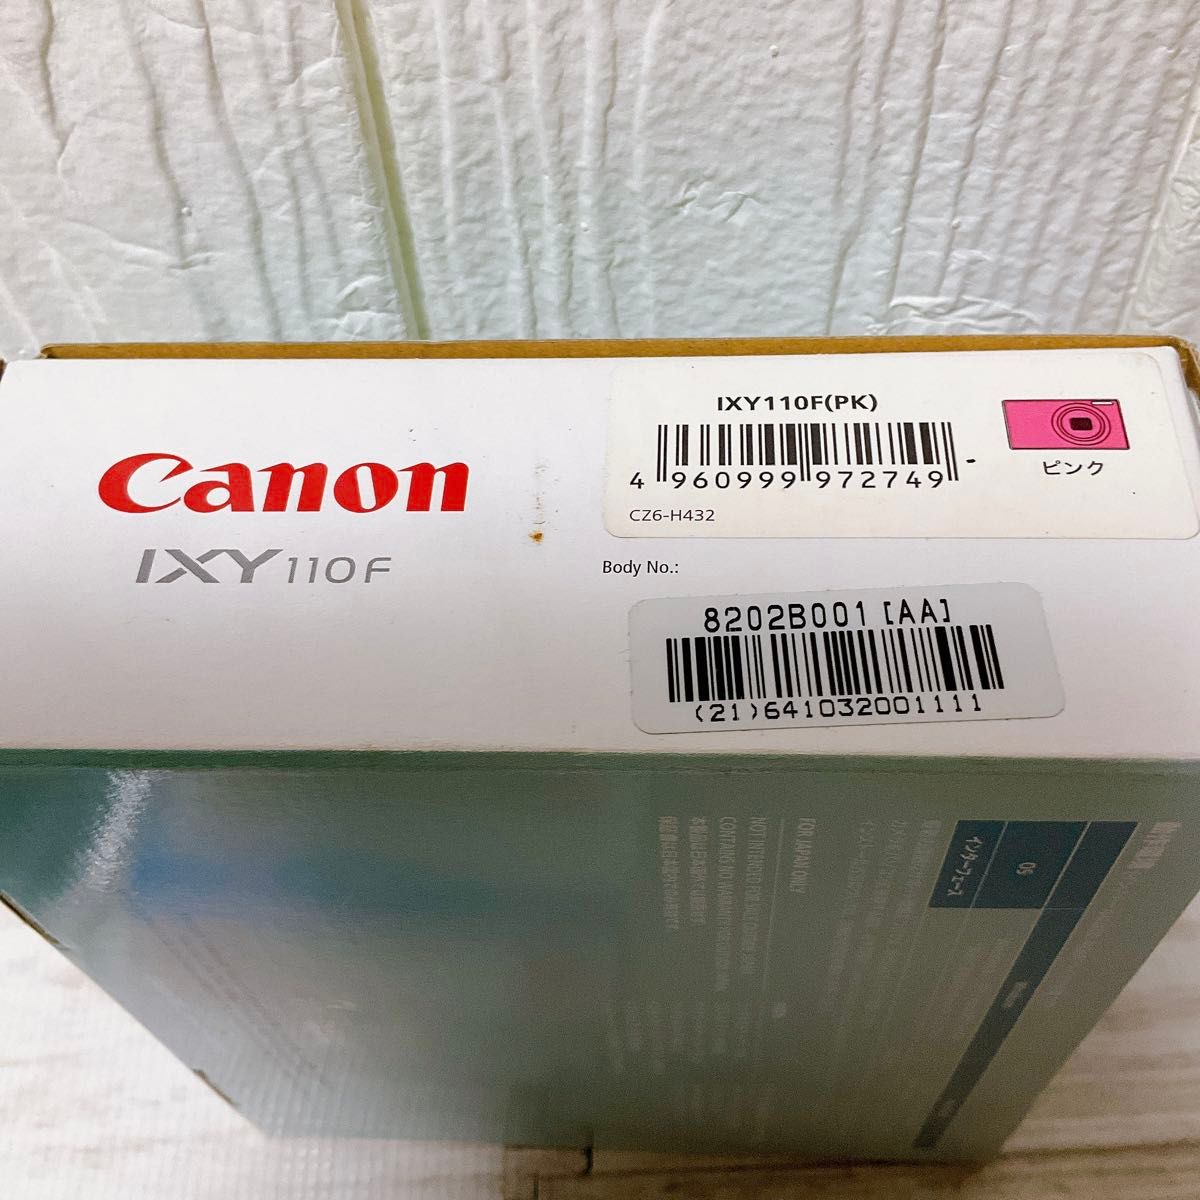 Canon キヤノン IXY 110F コンパクトデジタルカメラ 箱 ピンク